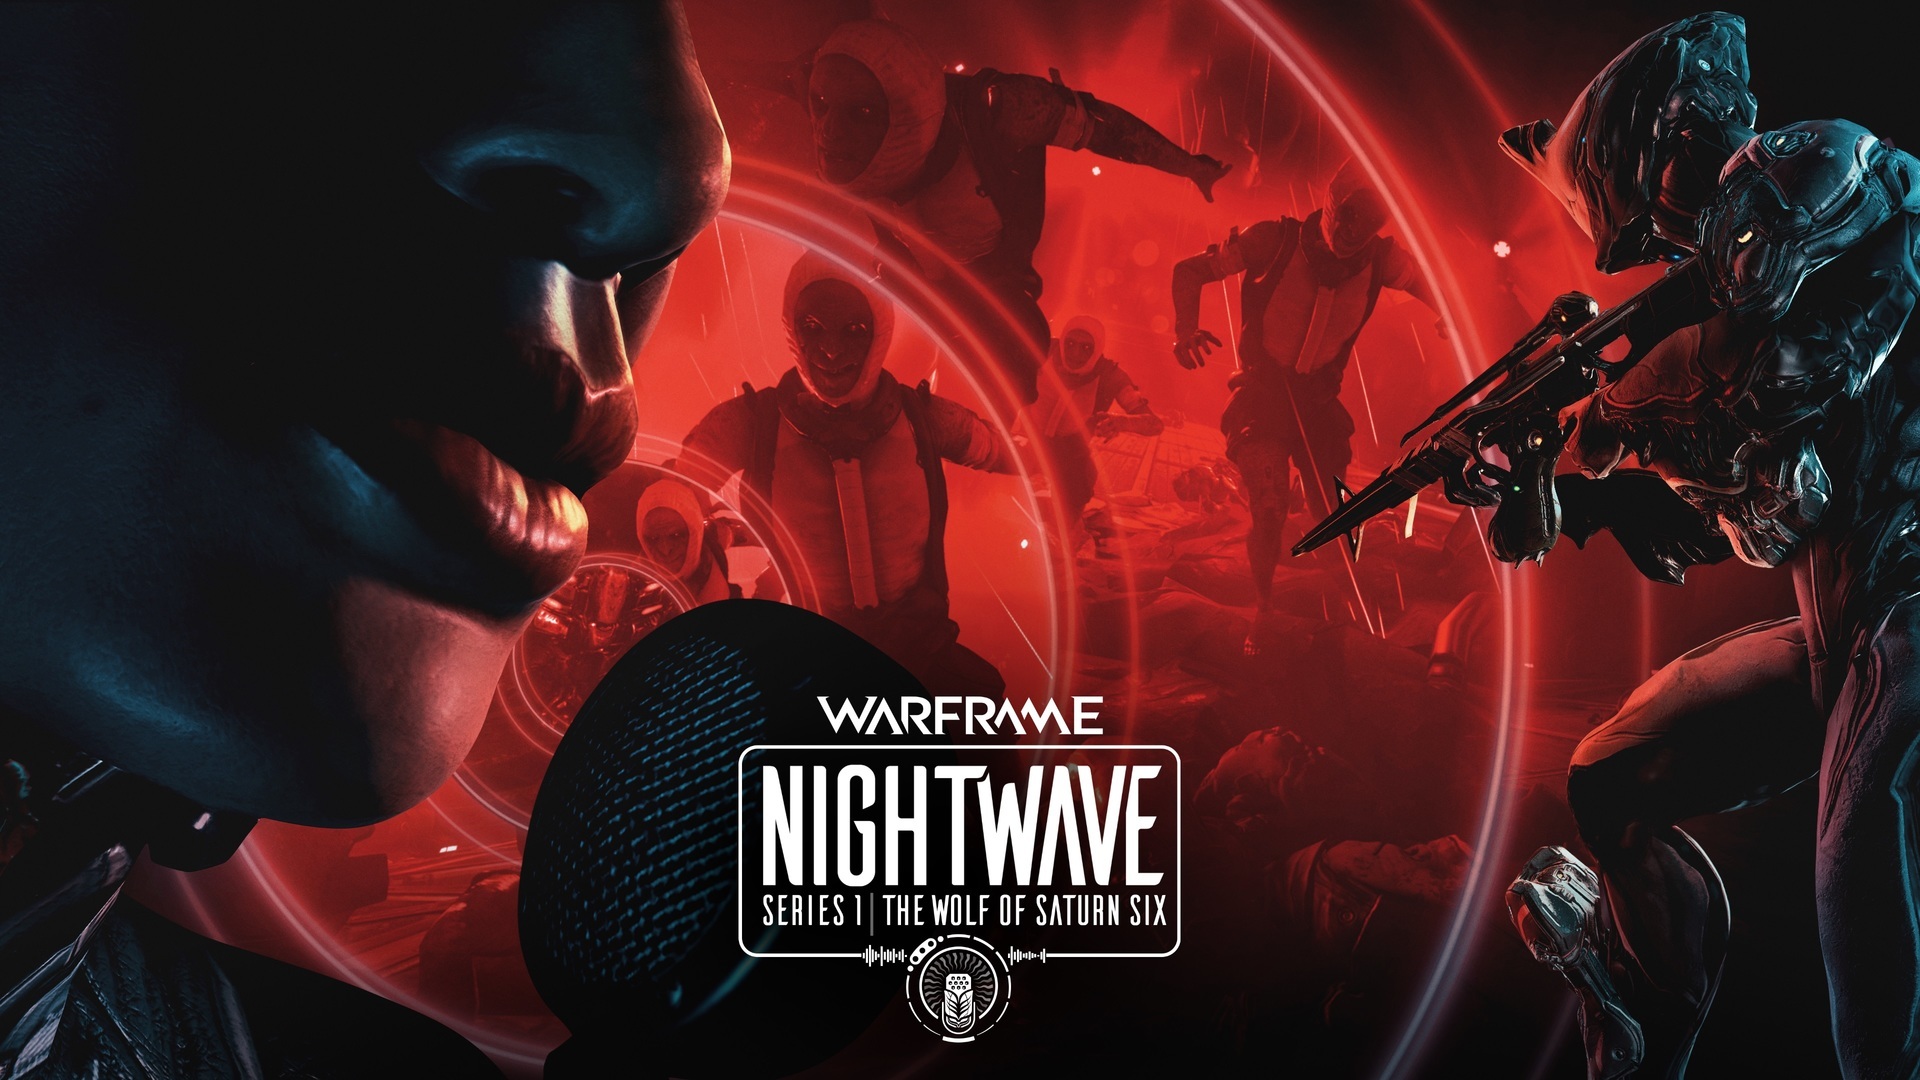 Nightwave シリーズ1 サターン シックスの狼 Warframe プロテンノとプロテイン